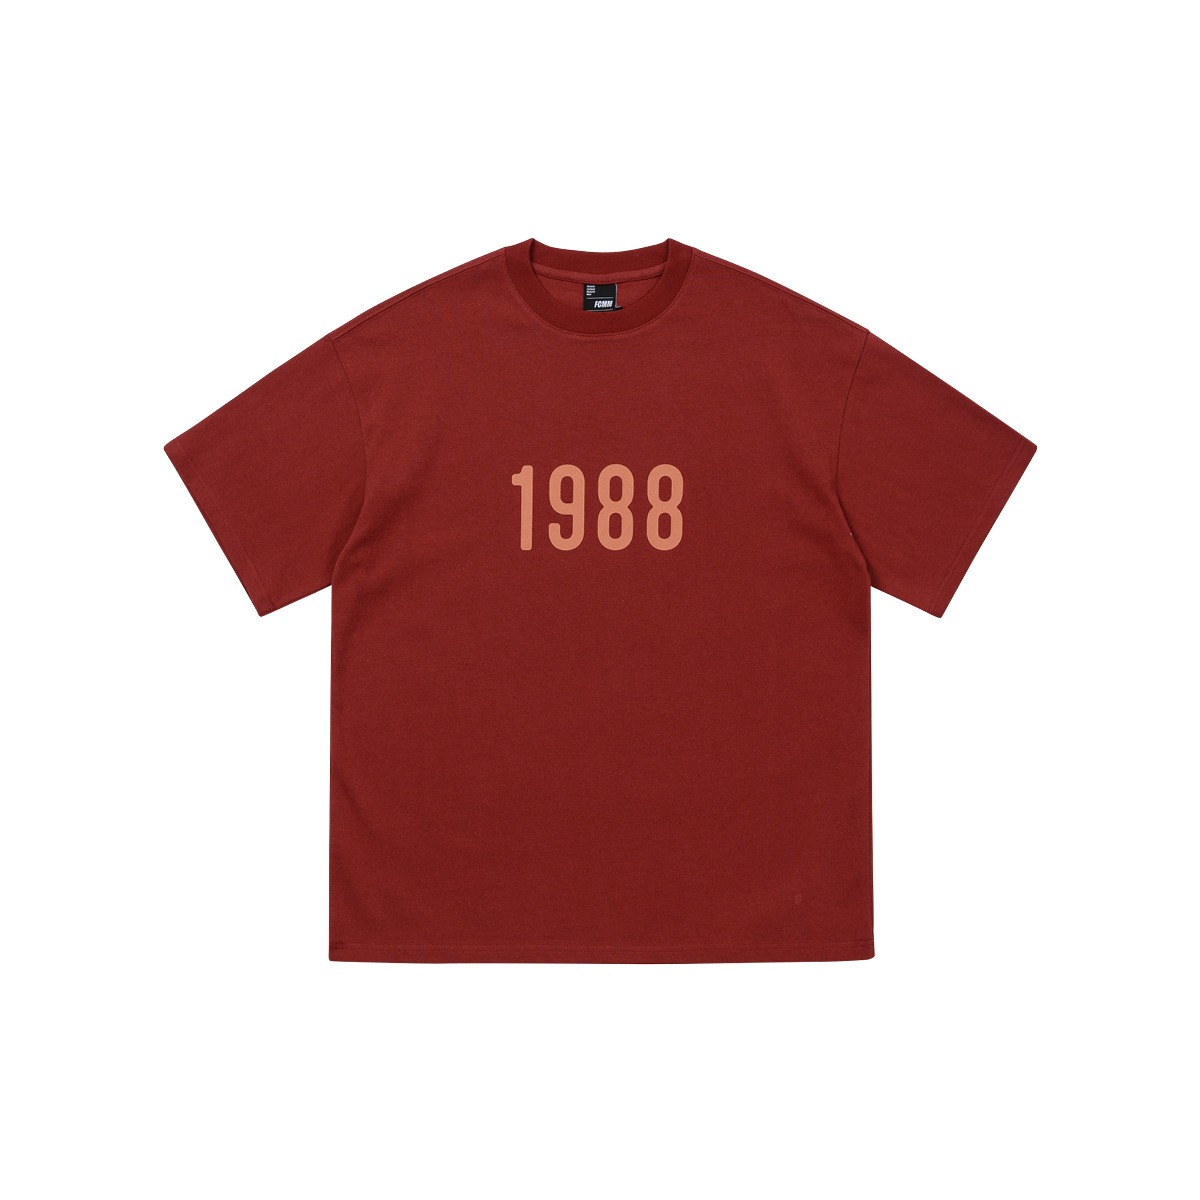 (04월 22일 순차발송)1988 레트로 티셔츠 - 와인